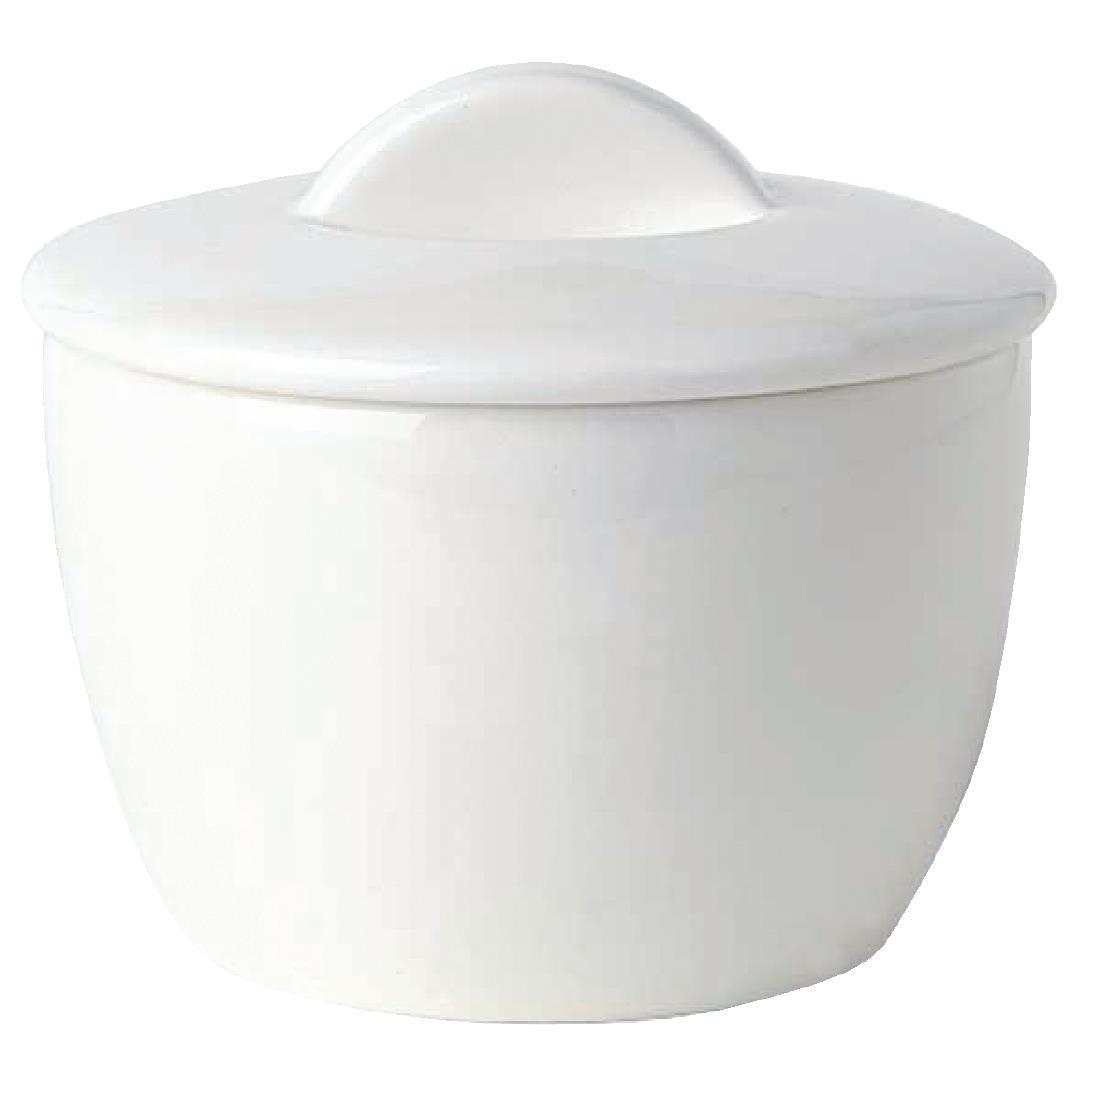 Royal Bone Ascot Sugar Bowls with Lids (Pack of 12) - CG322  - 1